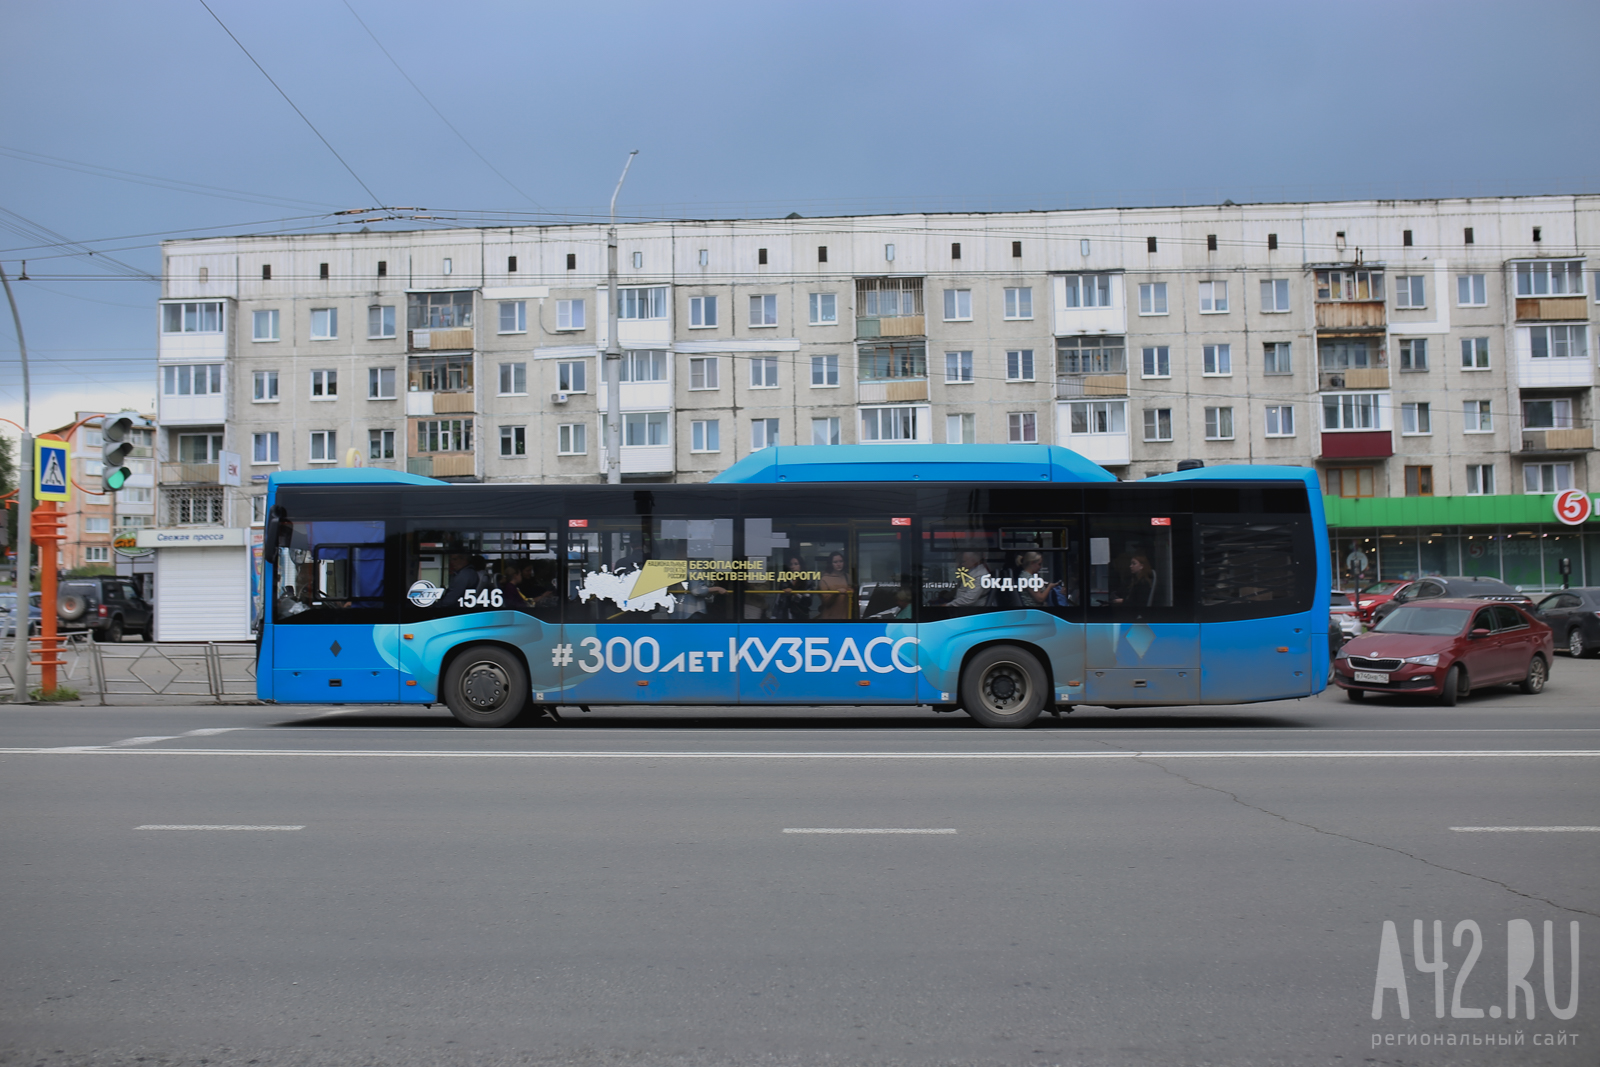 Власти Кузбасса назвали реальную стоимость проезда в общественном транспорте 